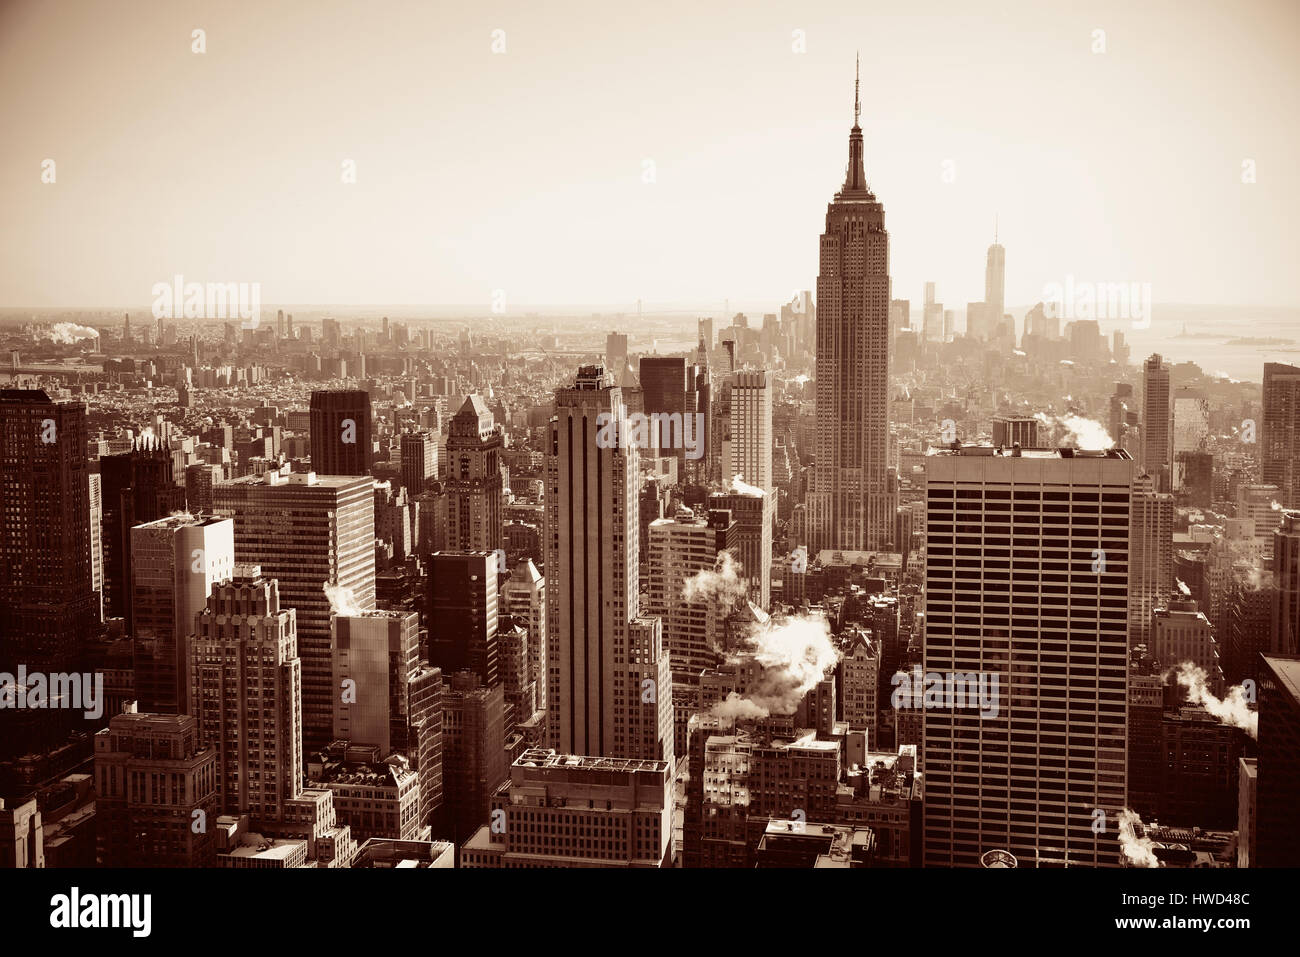 La VILLE DE NEW YORK, NY - 11 juil : Empire State Building et Skyline le 11 juillet 2014 à New York. C'est une 102 étages et a été bu le plus grand du monde Banque D'Images